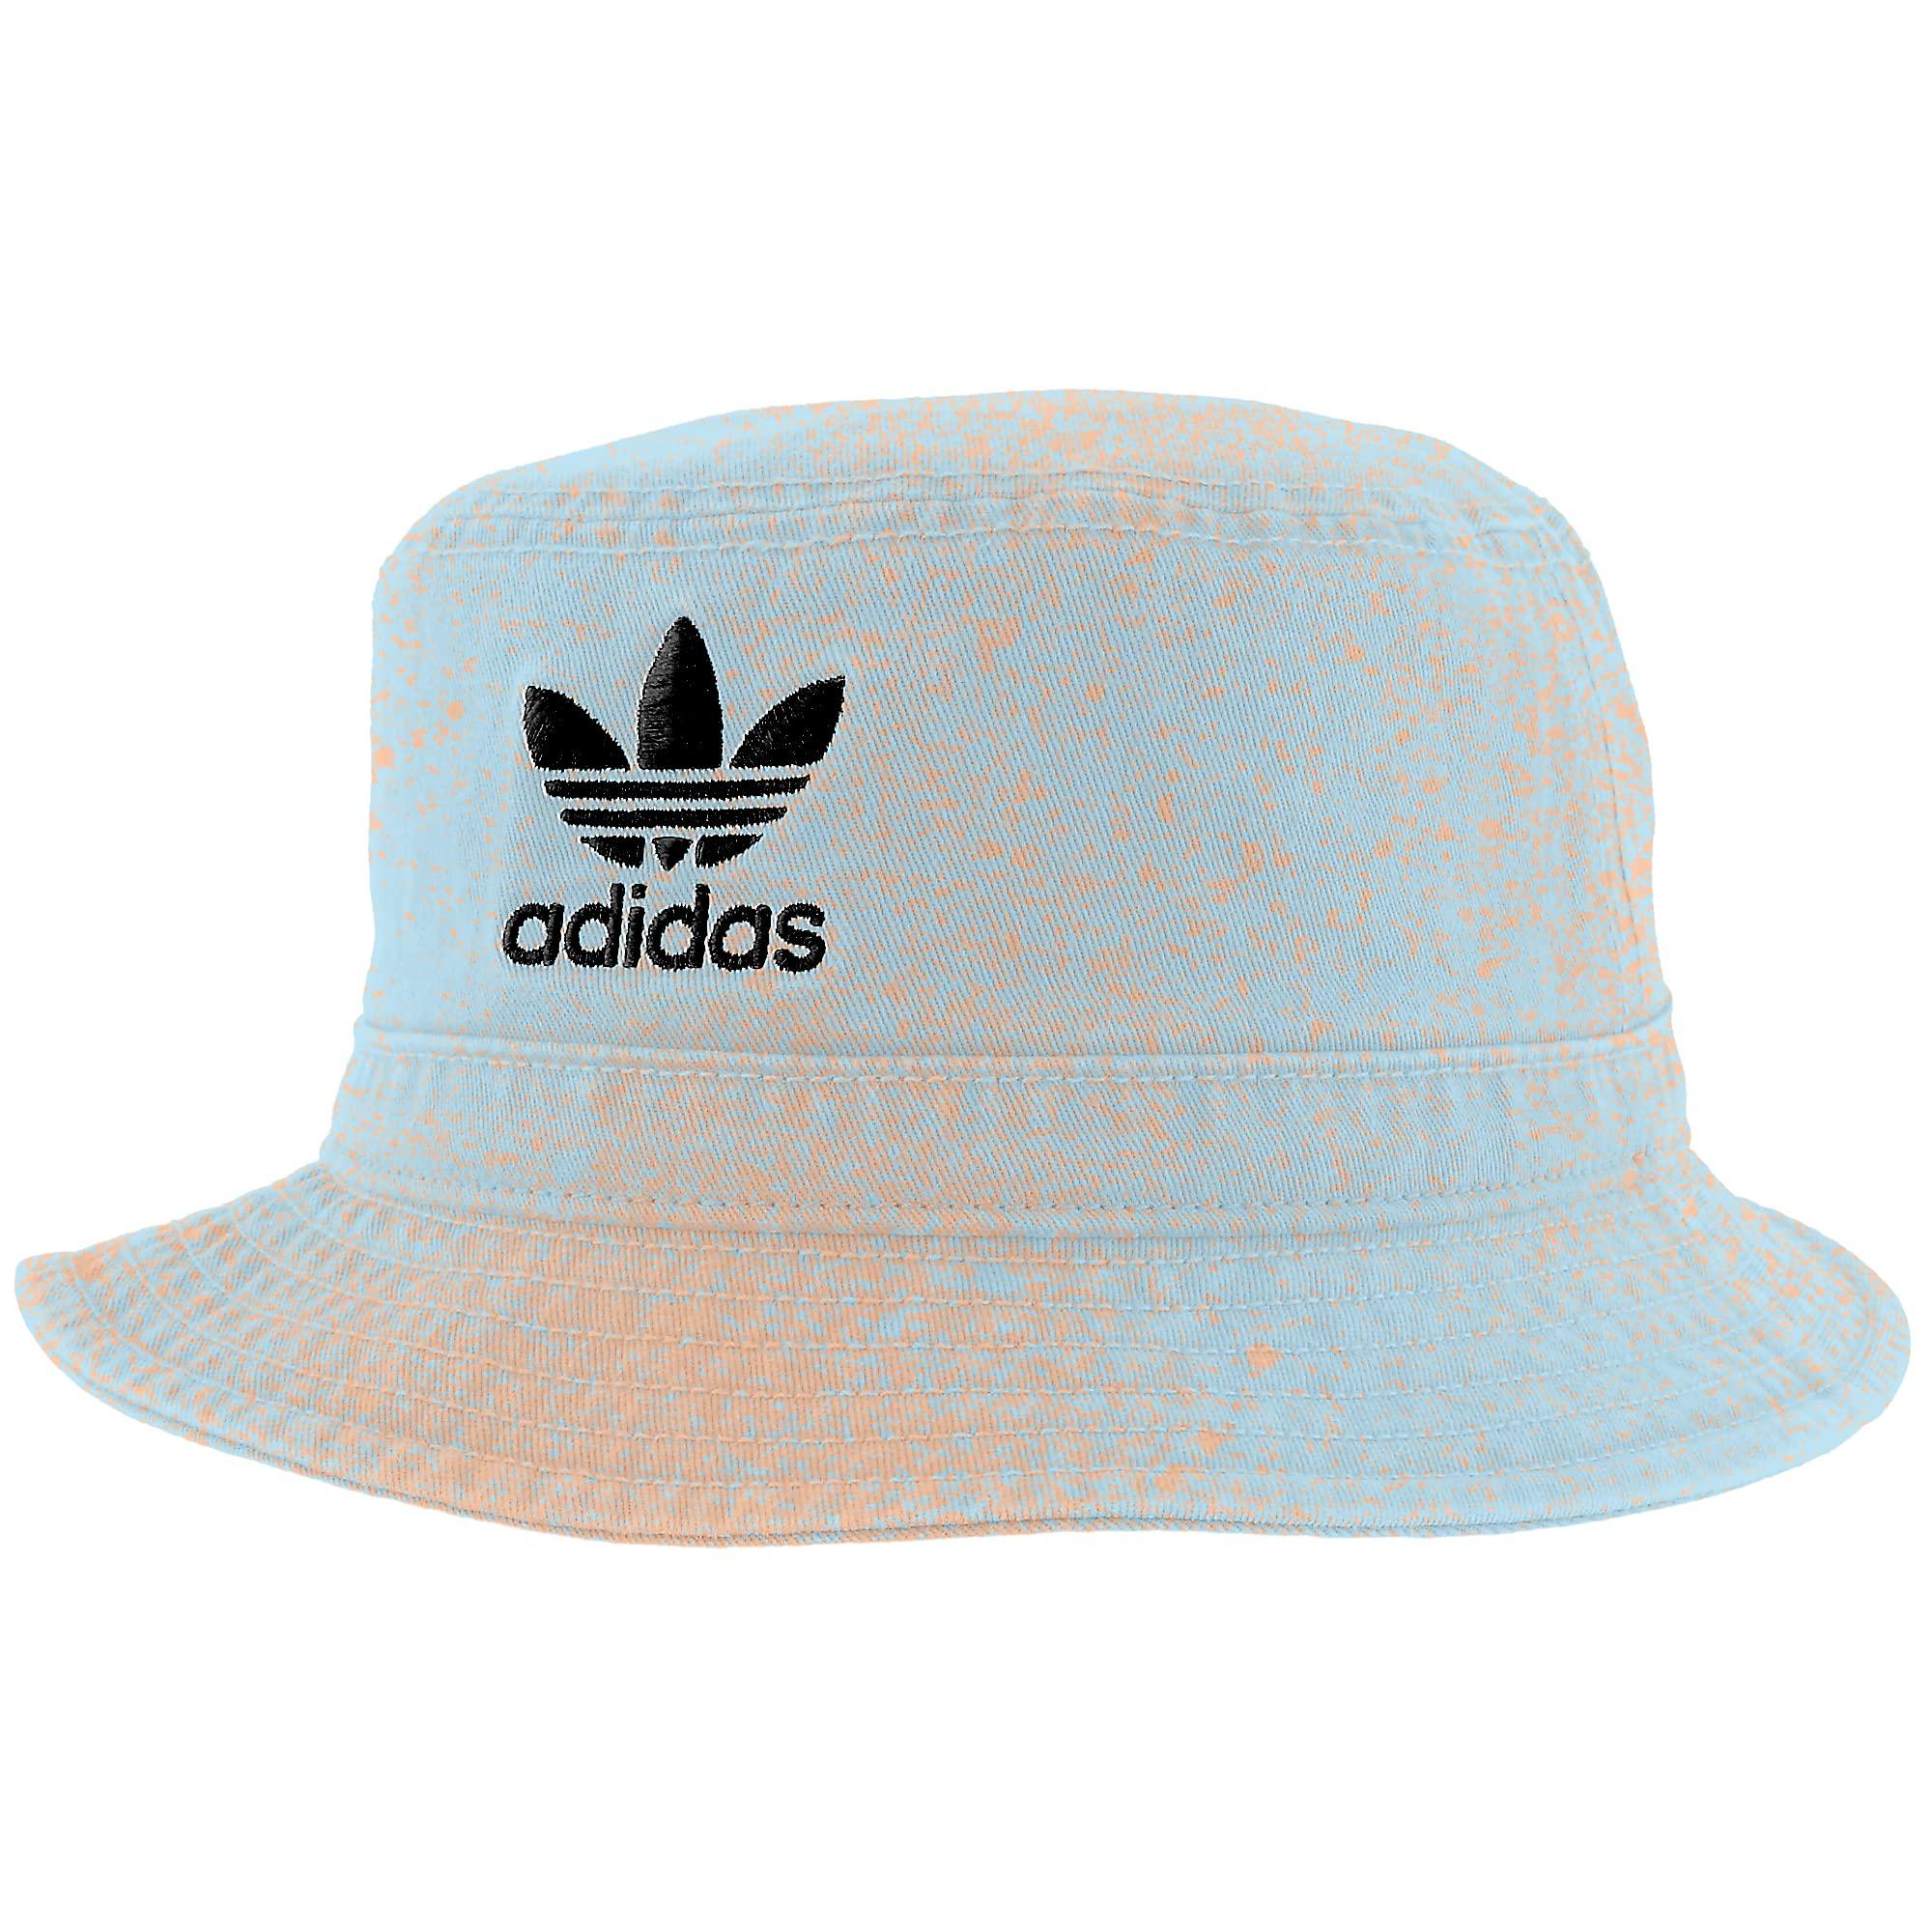 adidas Originals Spray Print Bucket Hat in Blue | Lyst